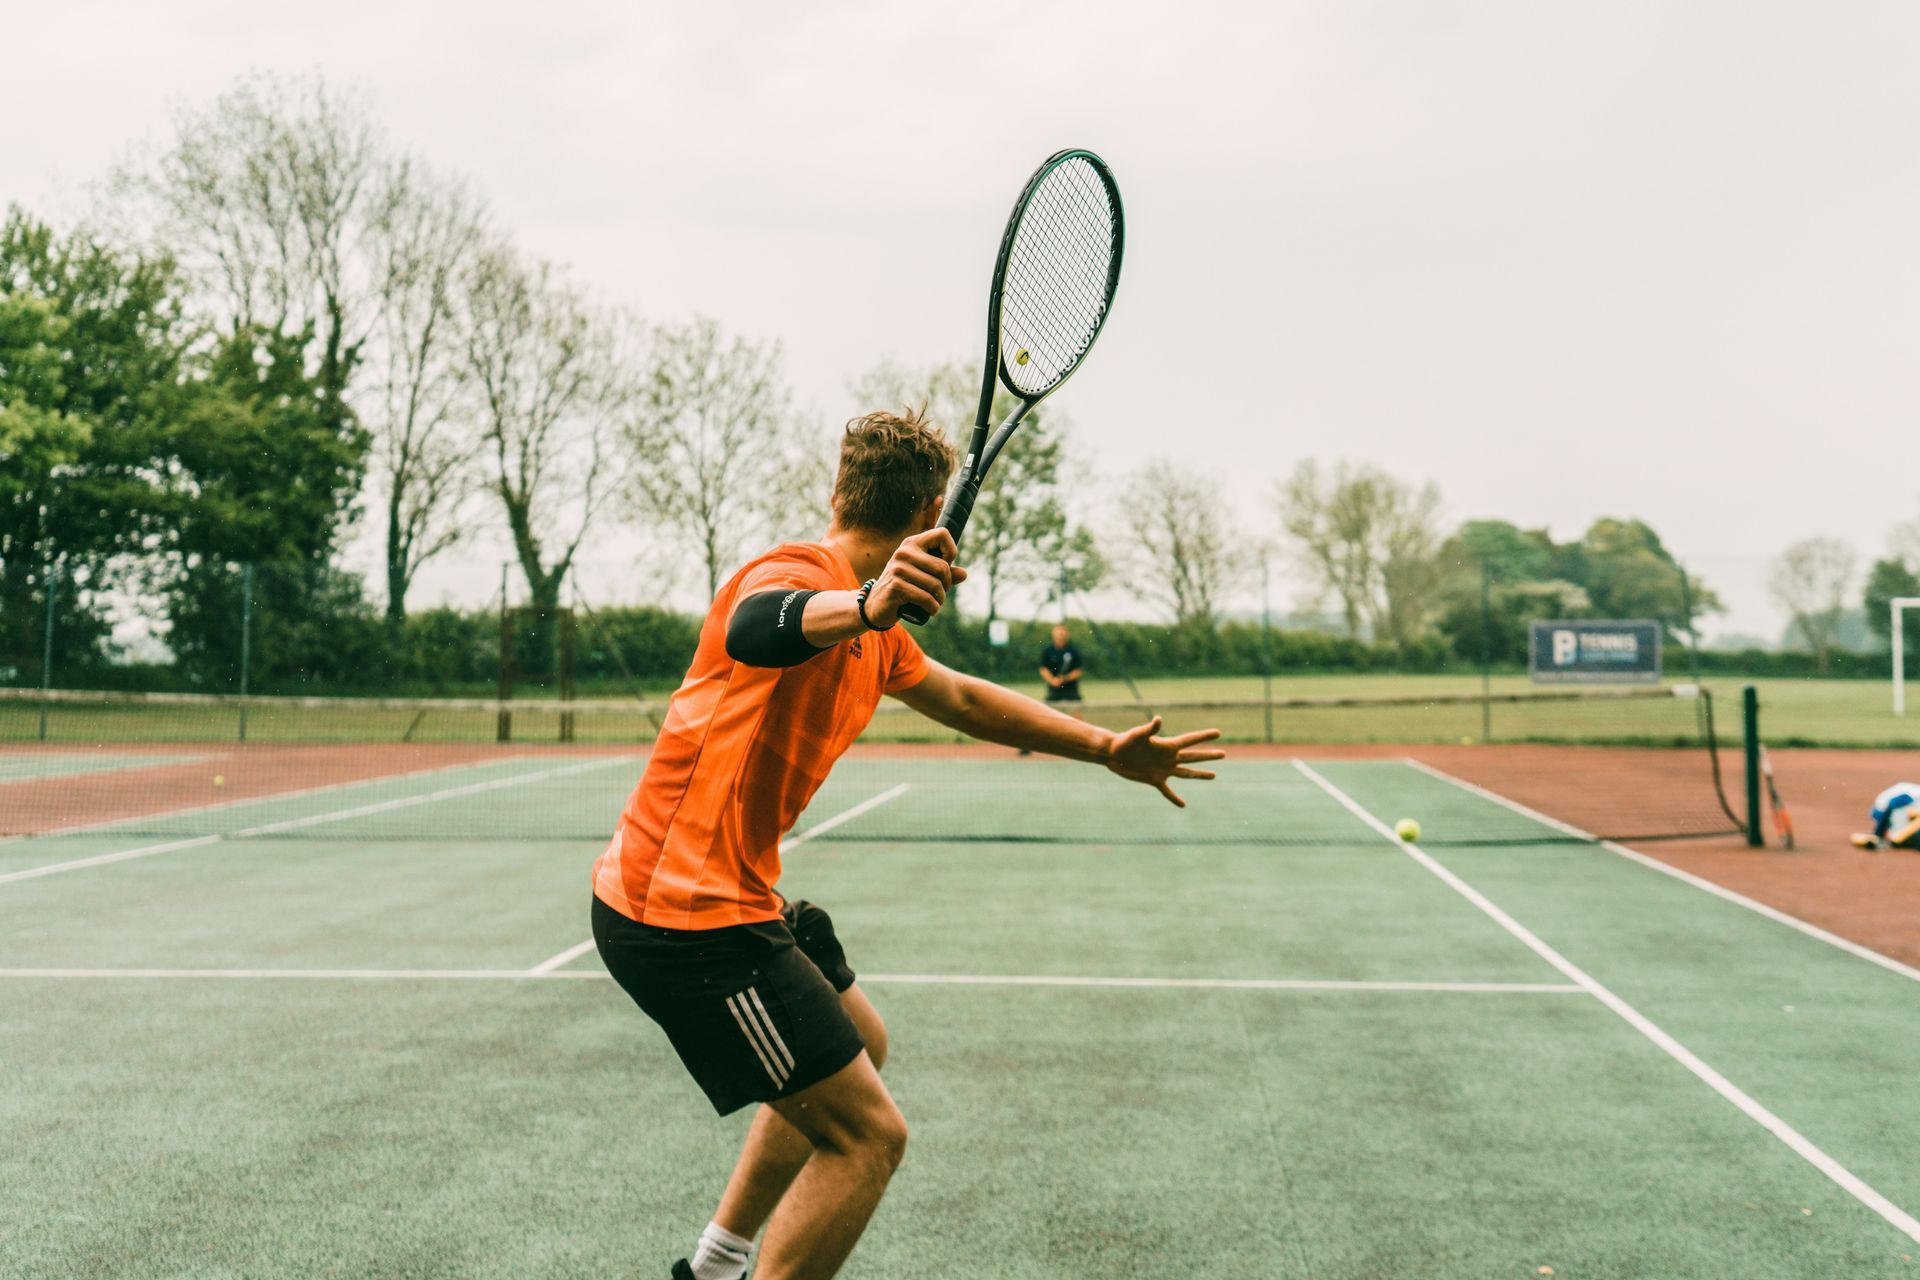 A man is holding a tennis racquet on a tennis court.